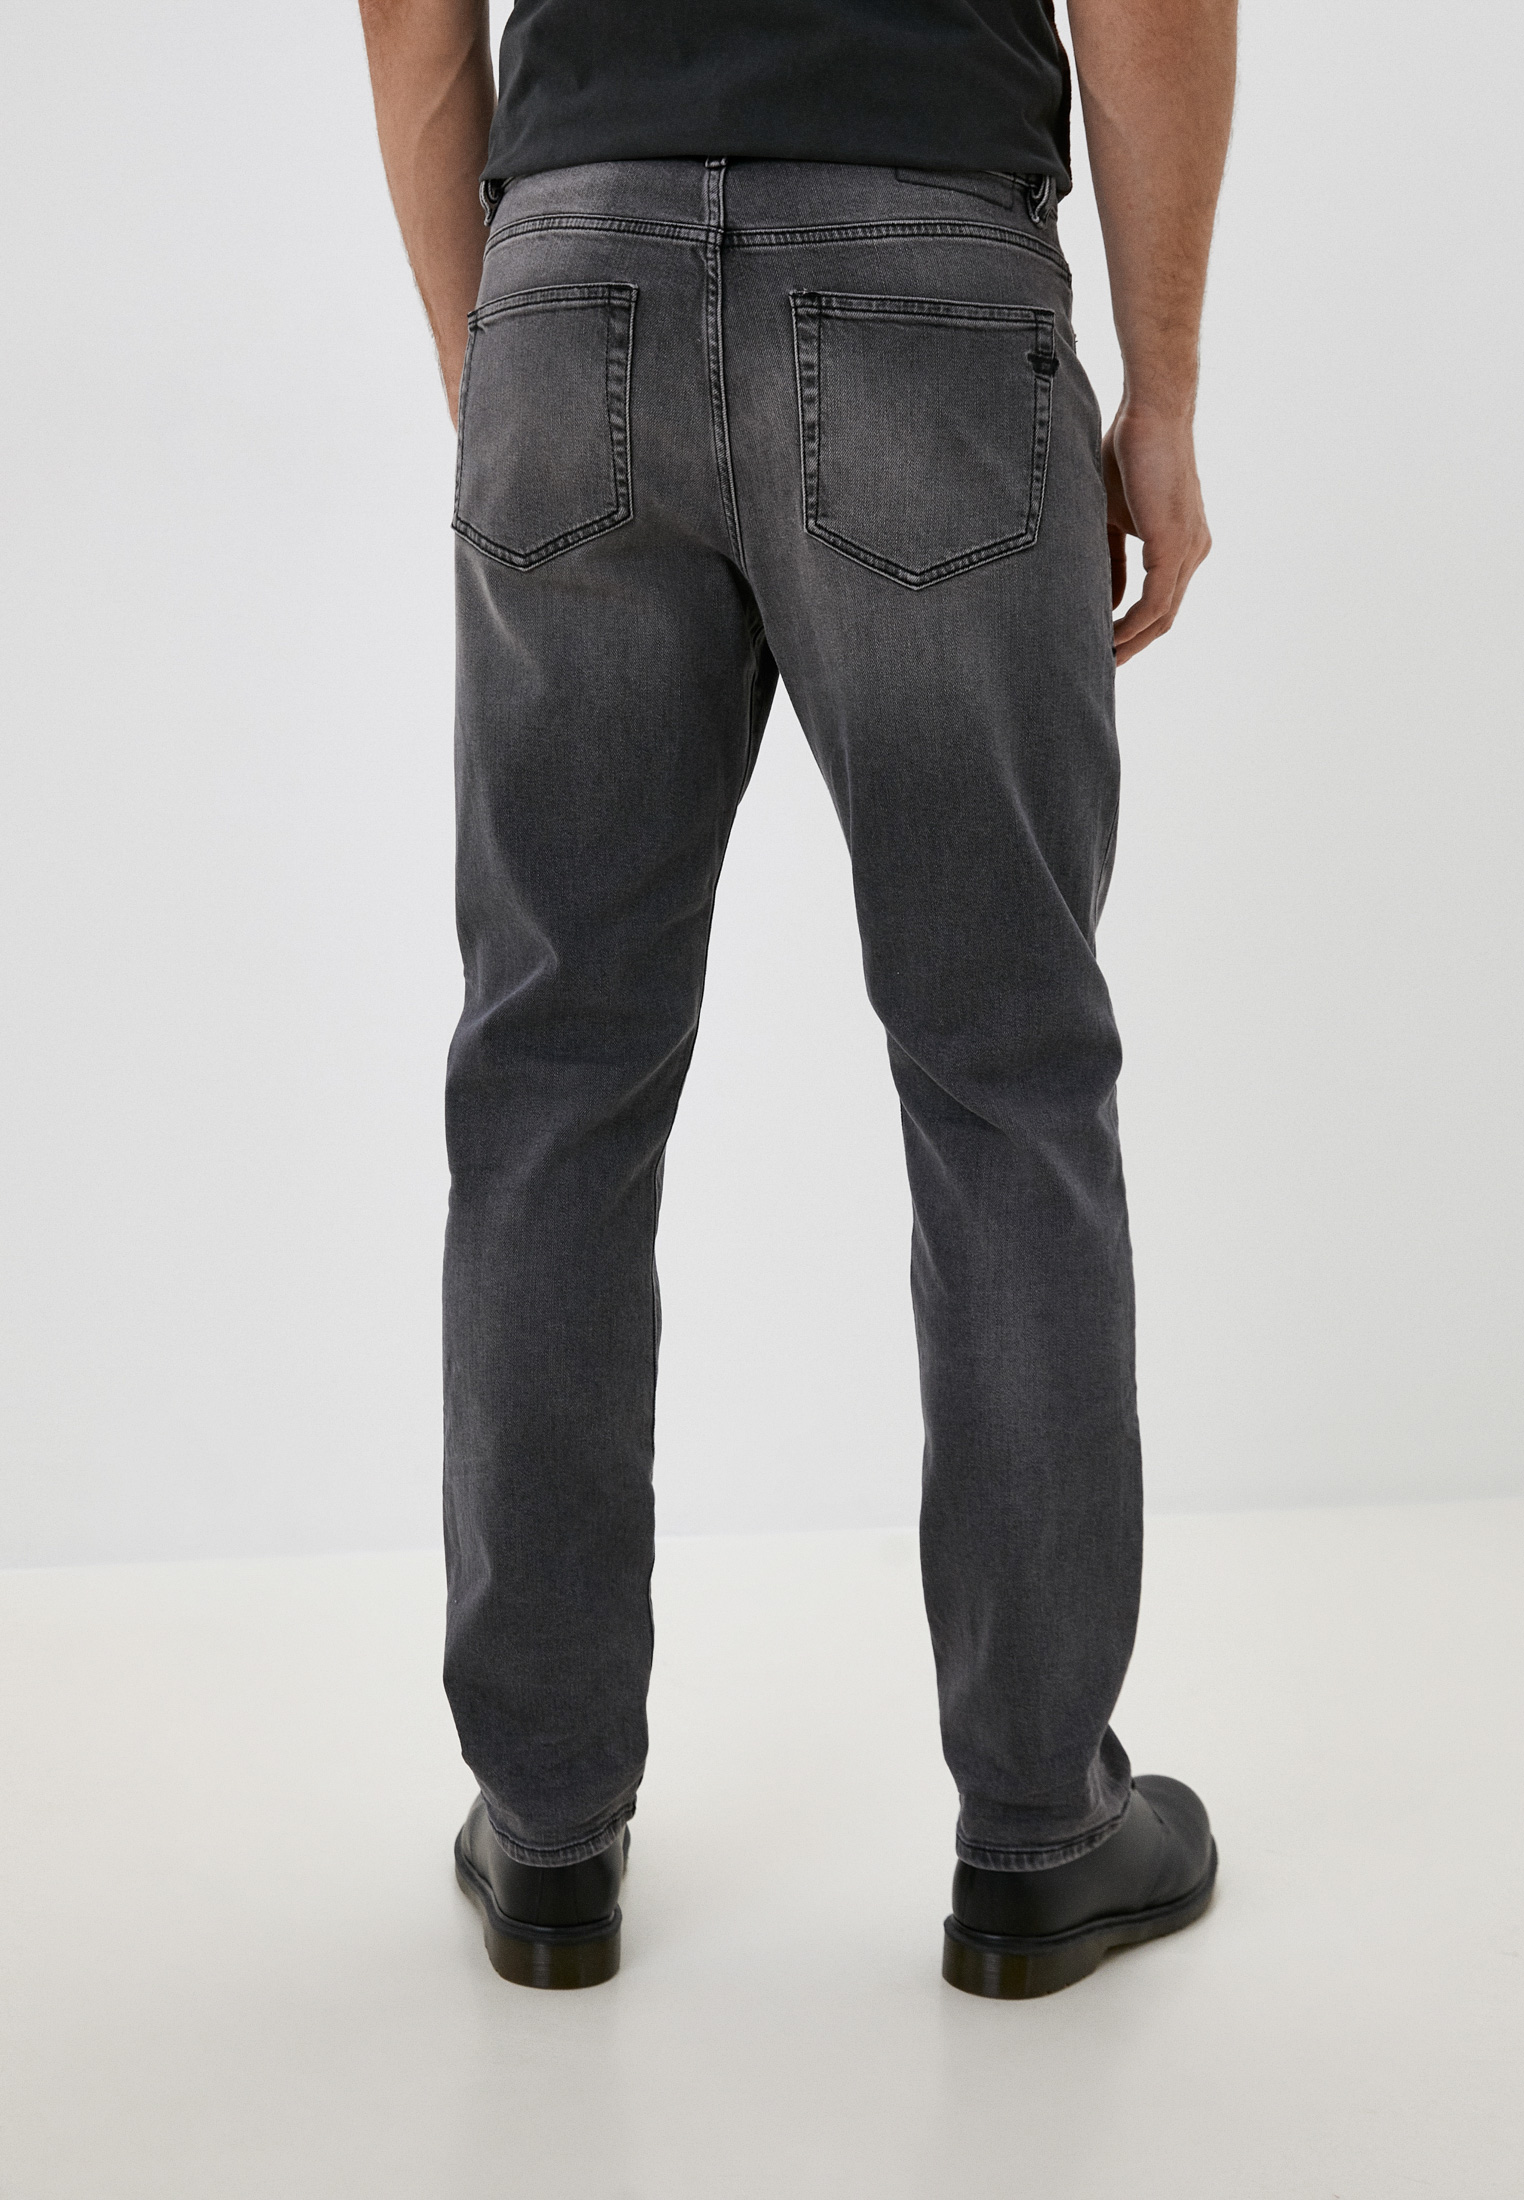 Мужские зауженные джинсы Diesel (Дизель) A0515809D49: изображение 3